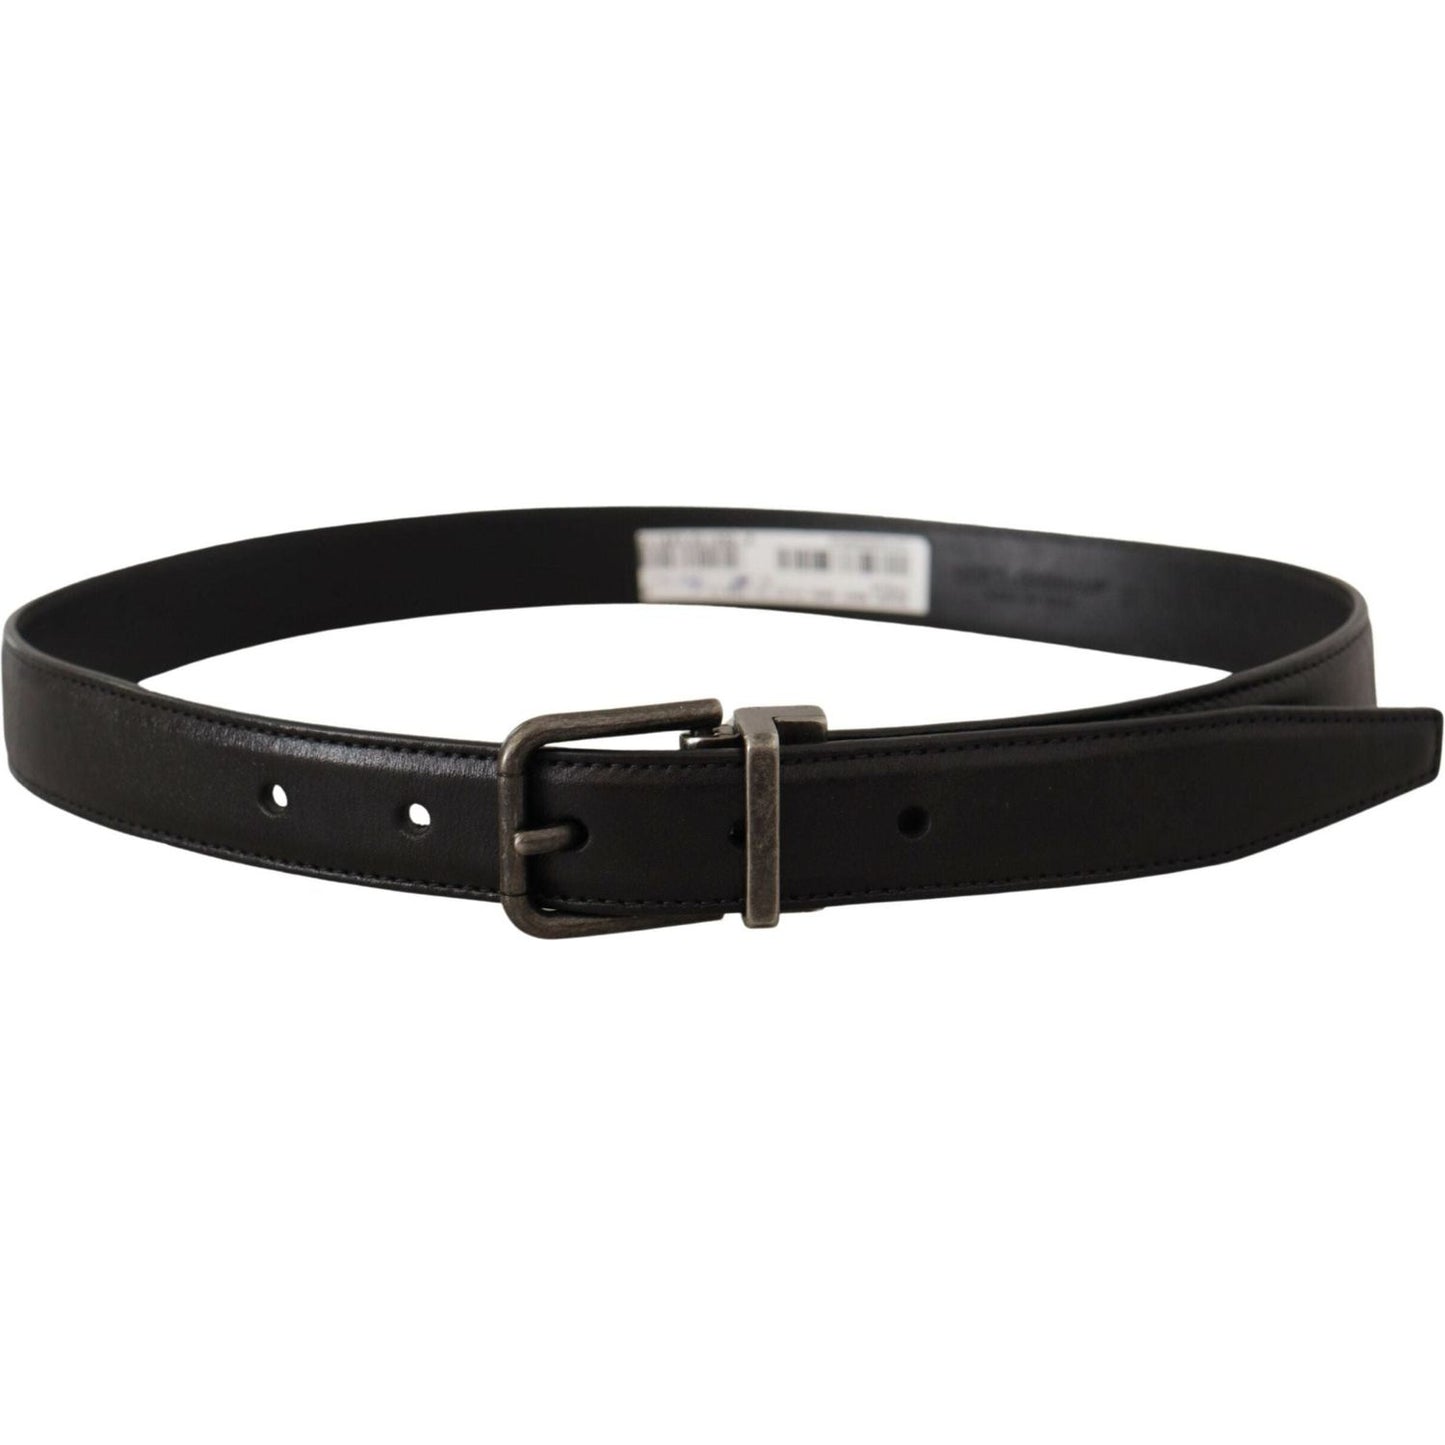 Dolce & Gabbana Elegant Black Leather Belt with Metal Buckle black-calf-leather-logo-metal-buckle-belt